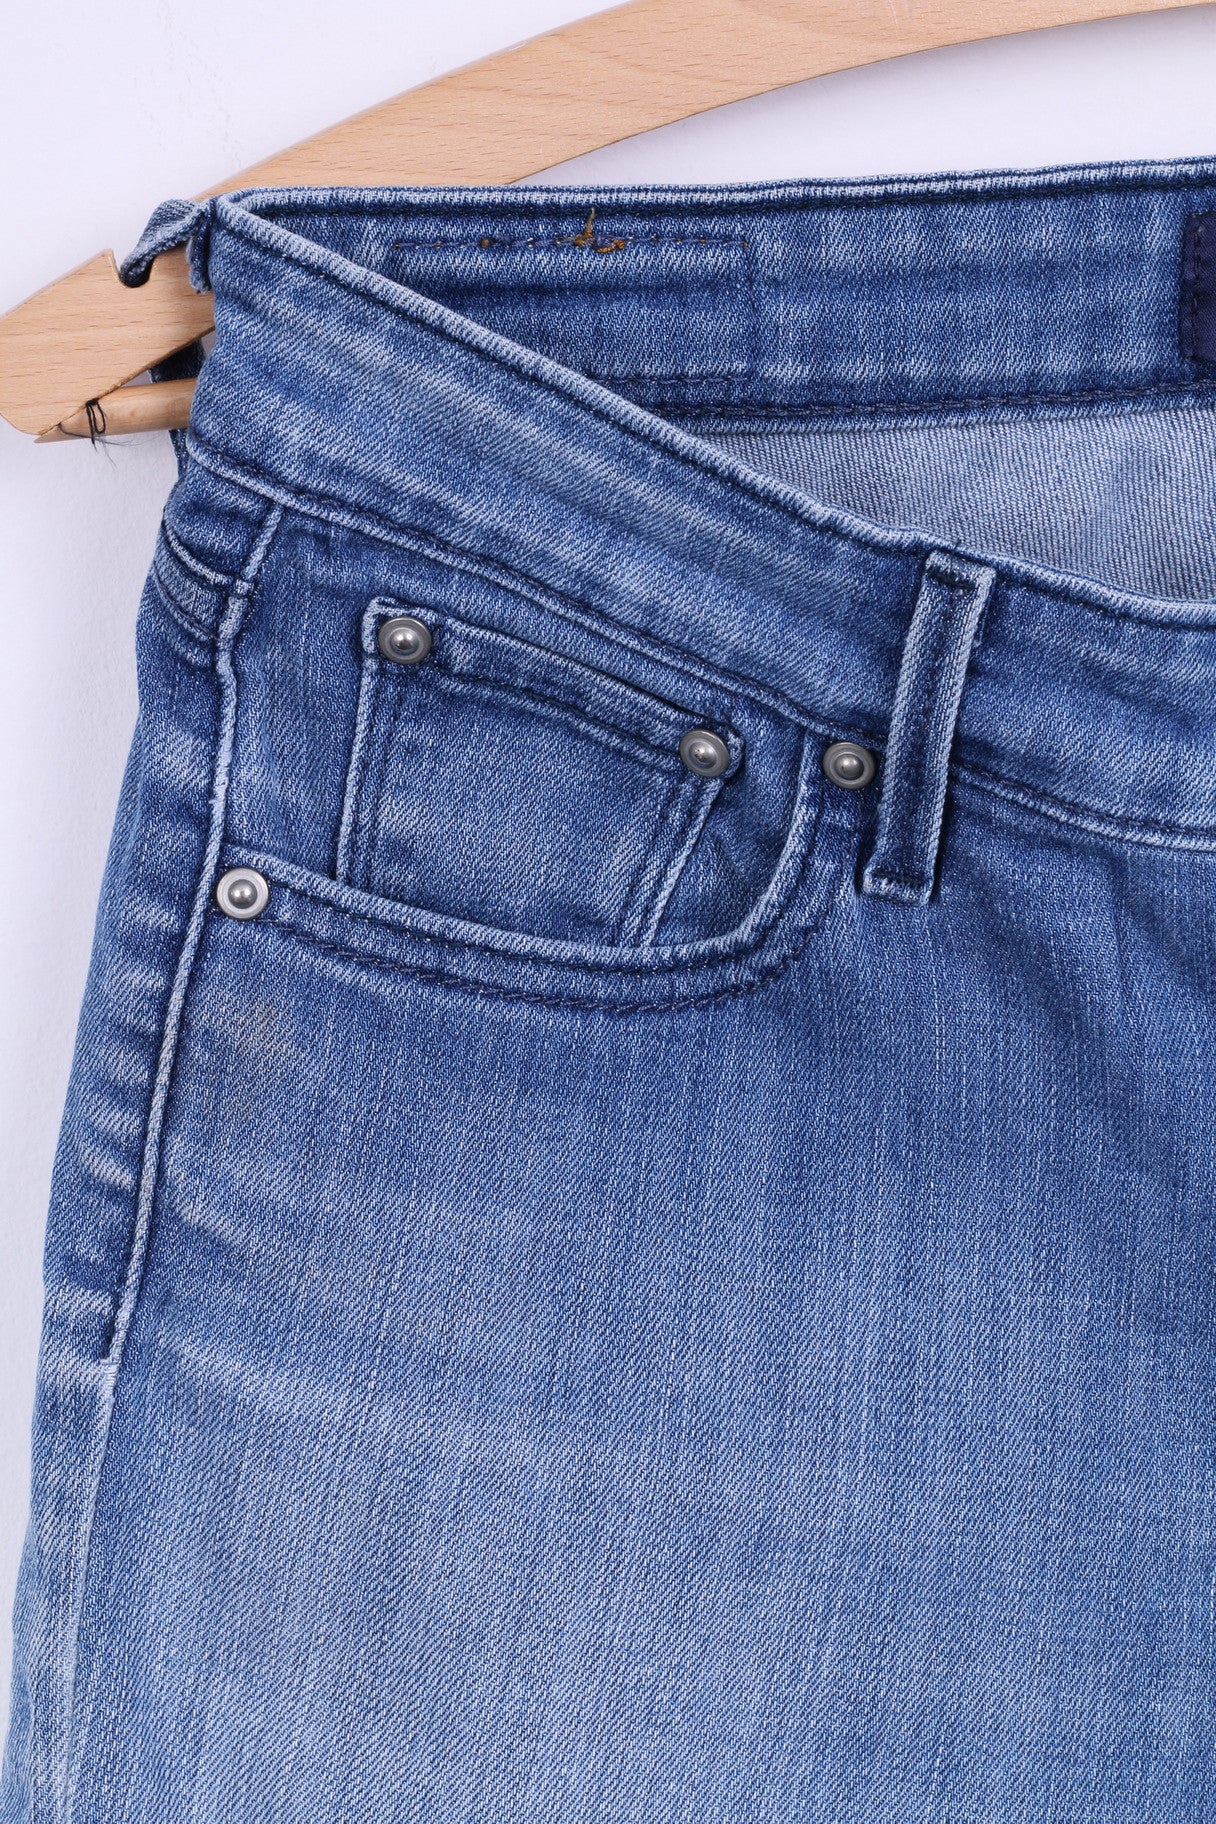 Levis Womens 26 Trousers Denim Cuave Classic Slim Leg Jeans Blue